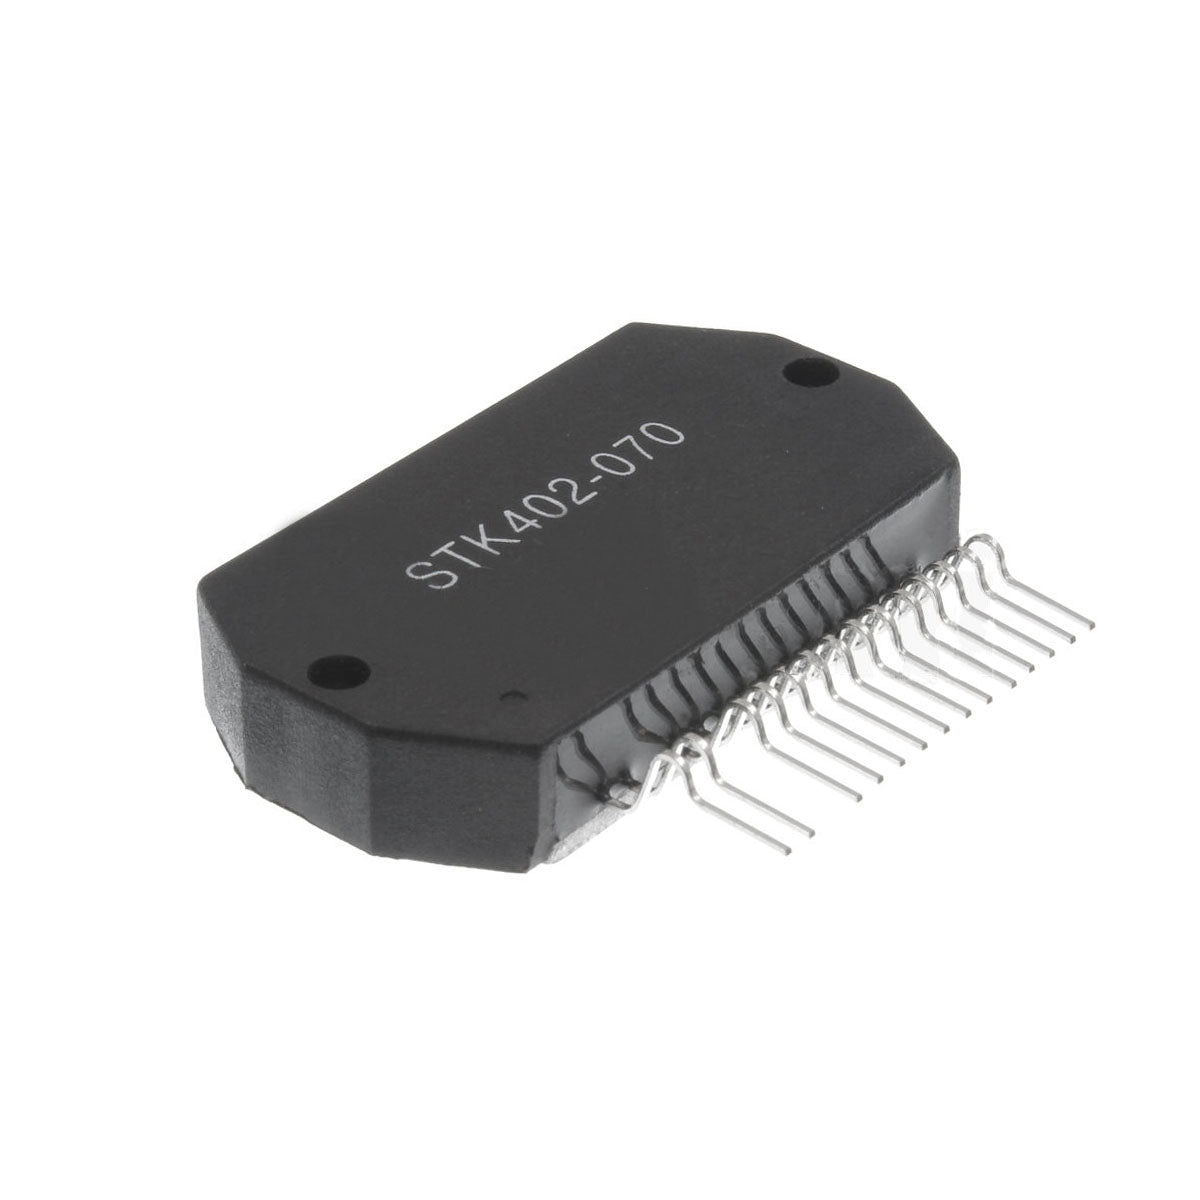 STK402-070 componente elettronico, circuito integrato, transistor, 14 contatti